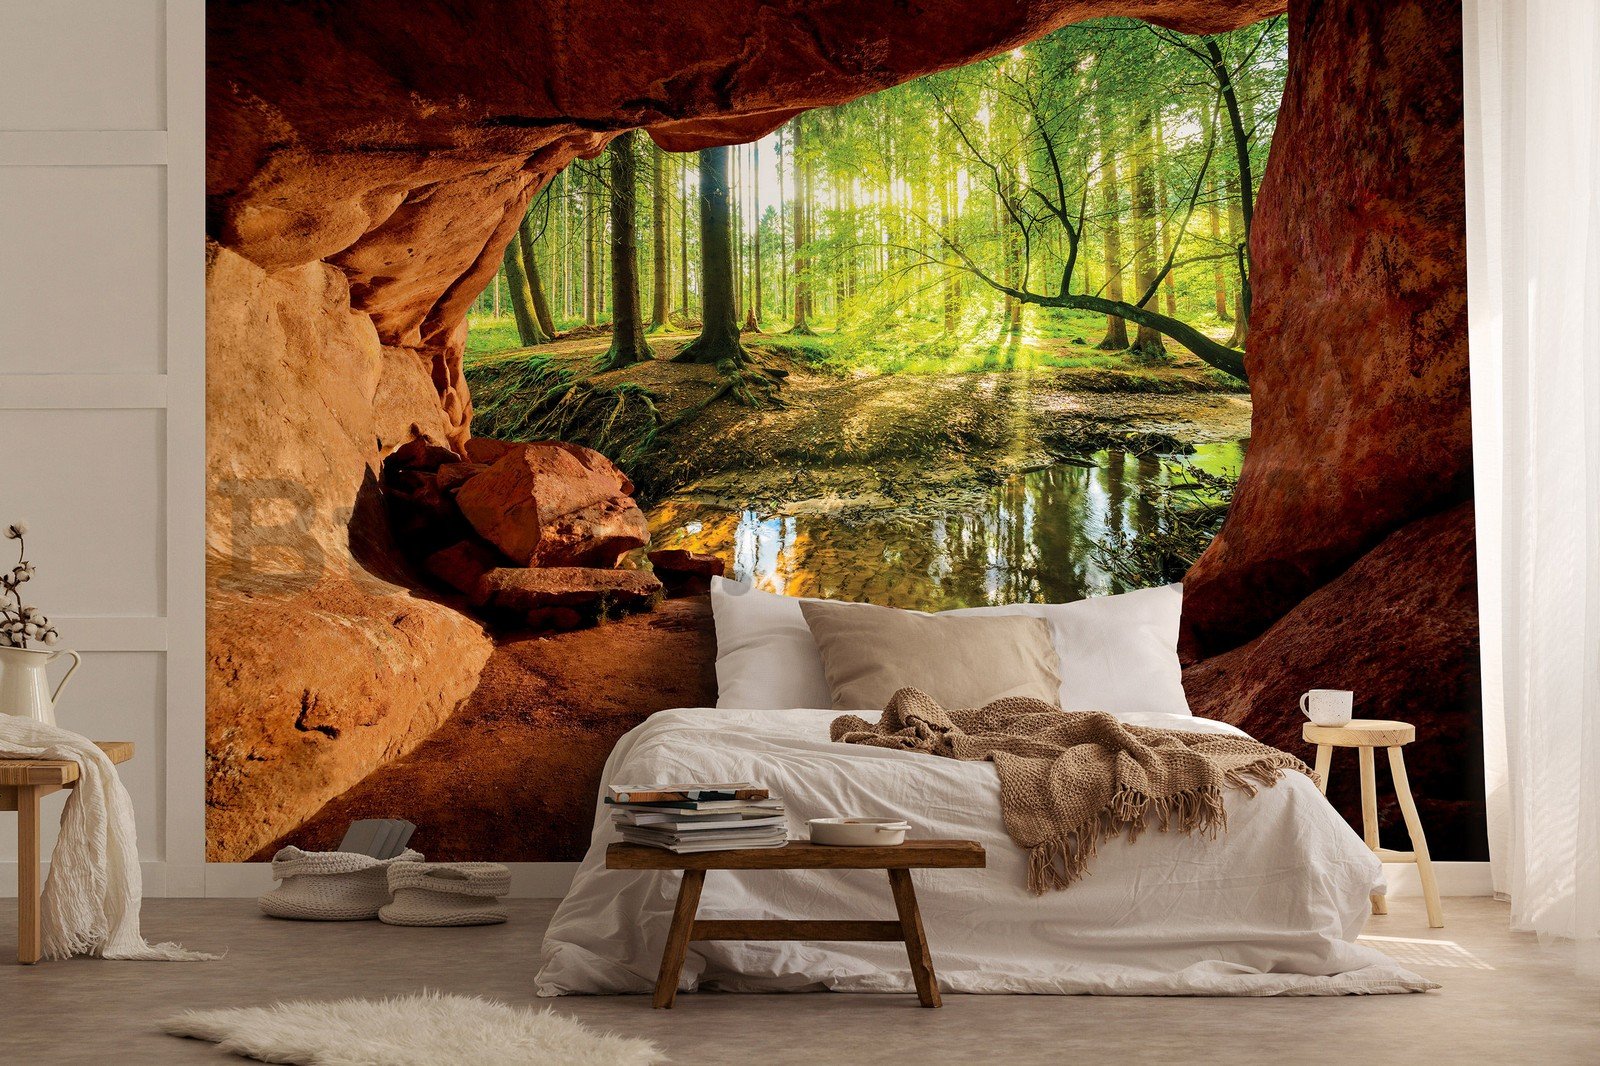 Wall mural vlies: A cave near a floodplain forest - 254x184 cm